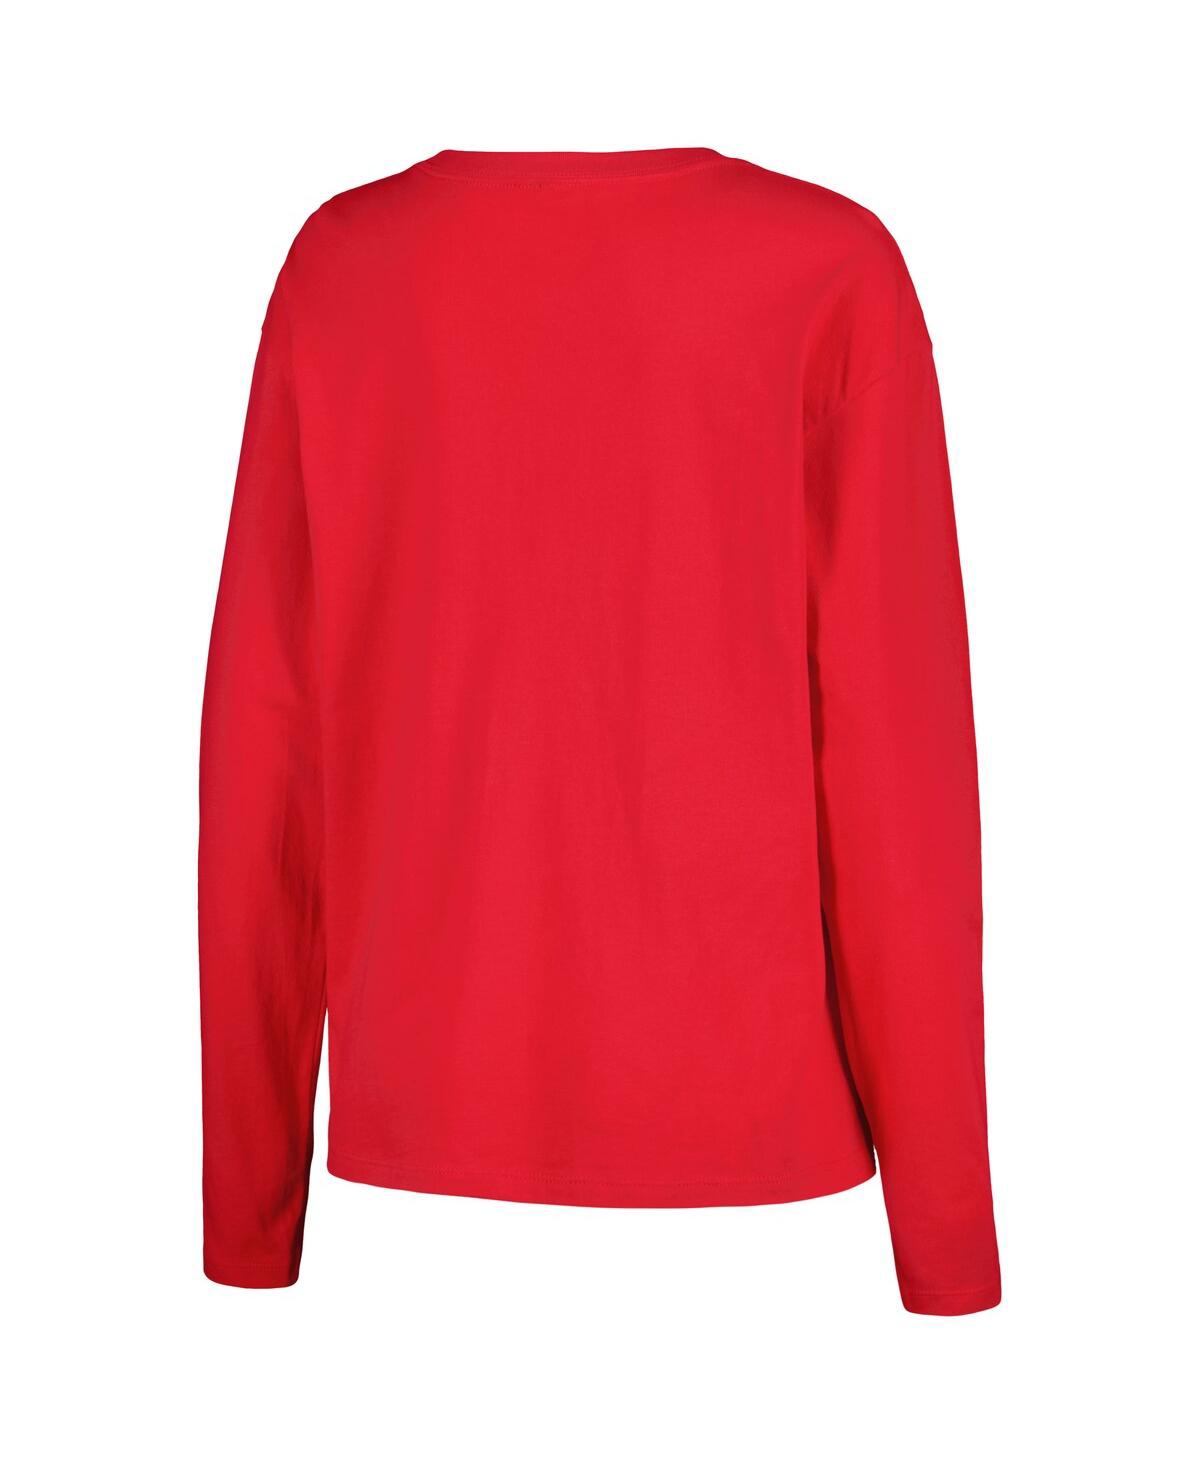 Shop Outerstuff Women's Red Team Usa Long Sleeve T-shirt